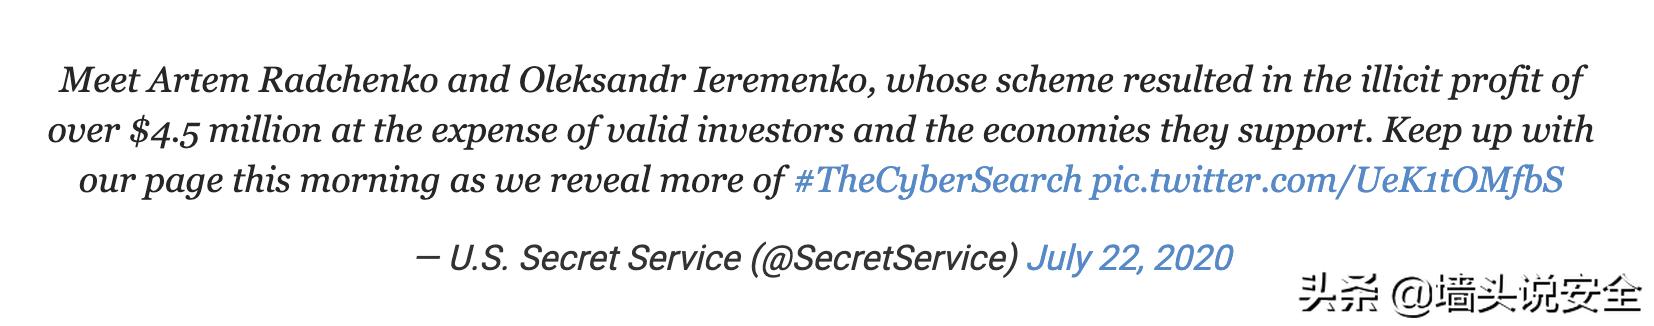 乌克兰黑客入侵美国证券，美国国务院悬赏100万$获取黑客信息